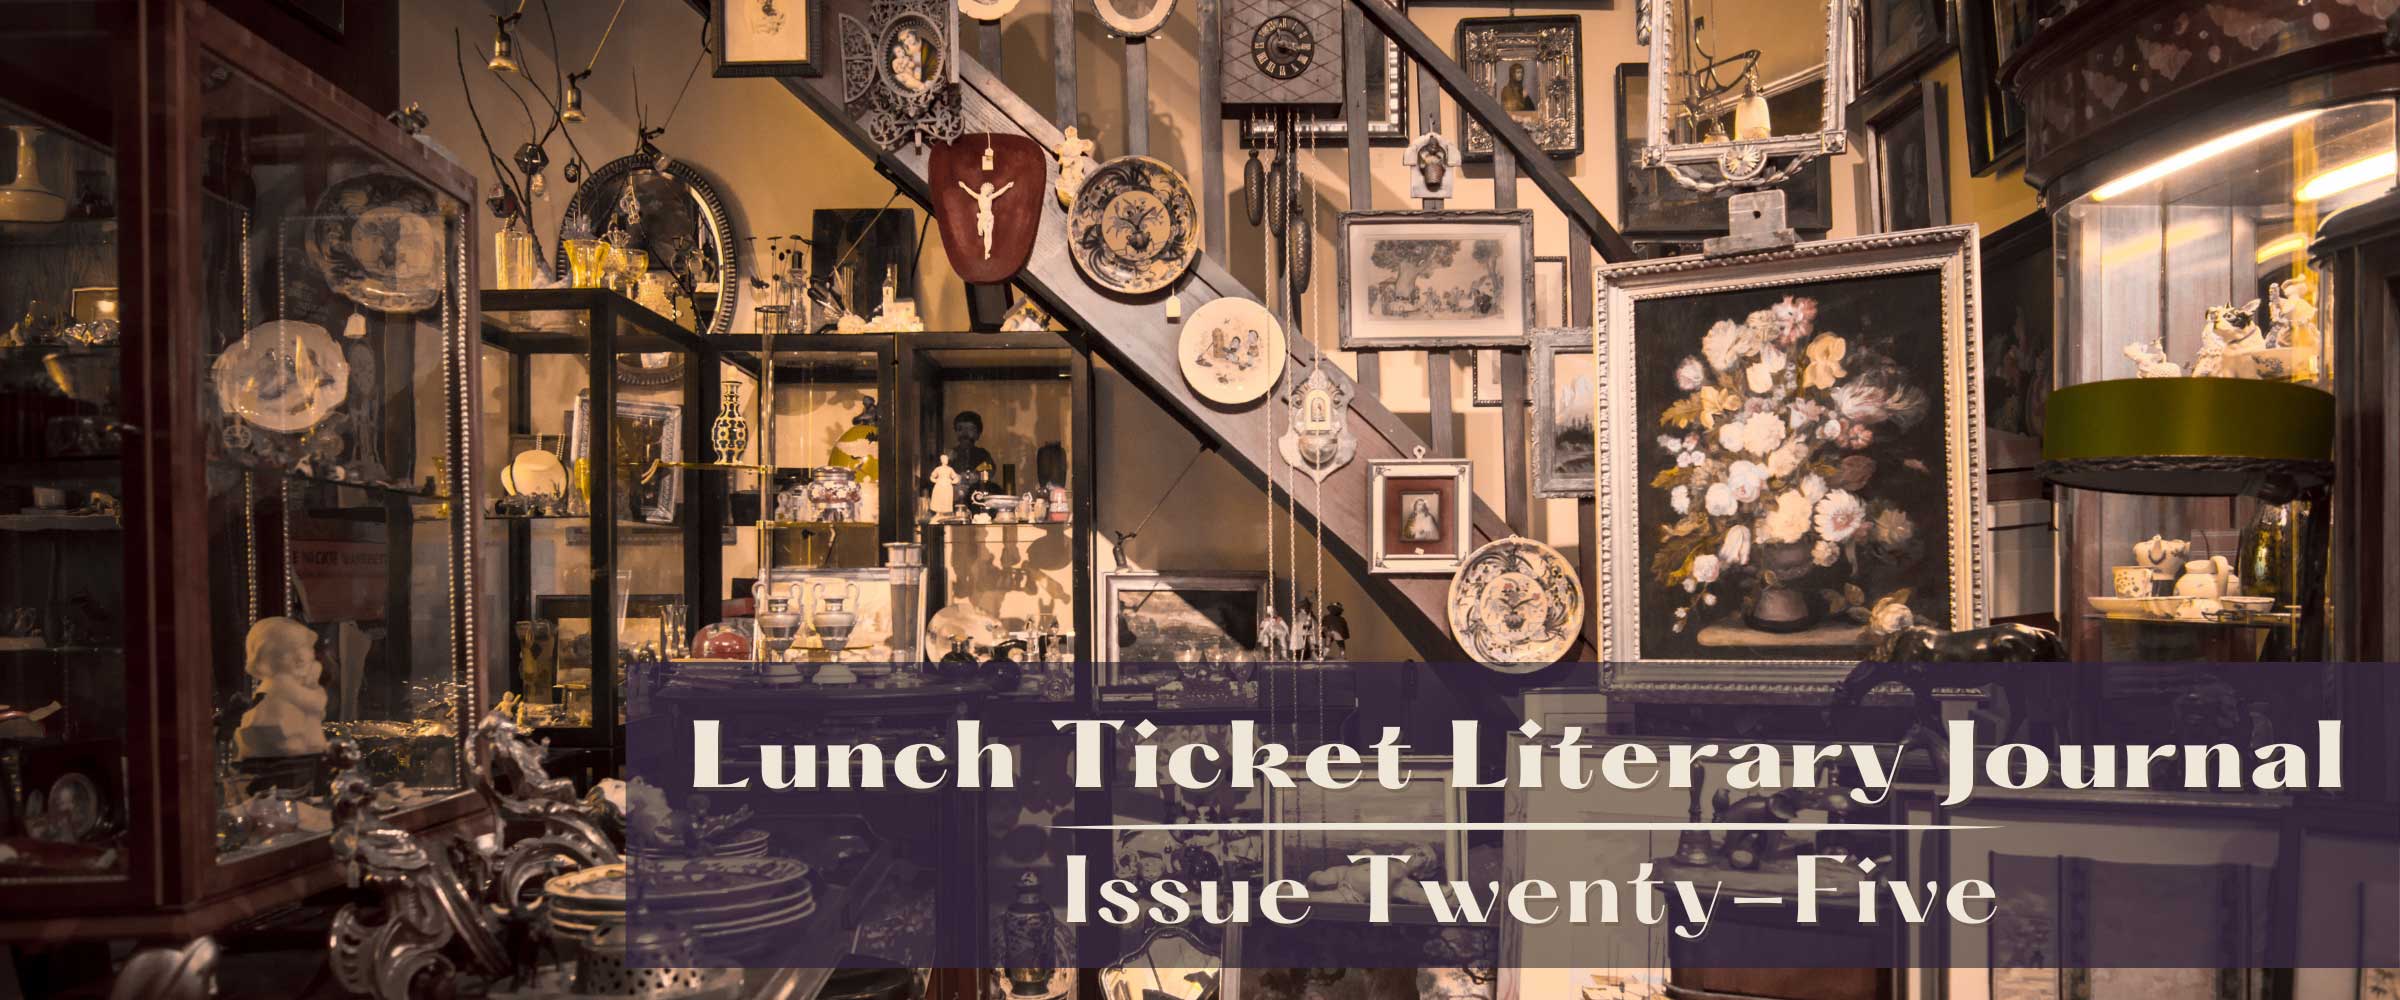 Lunch Ticket Literary Journal, Issue Twenty-Five